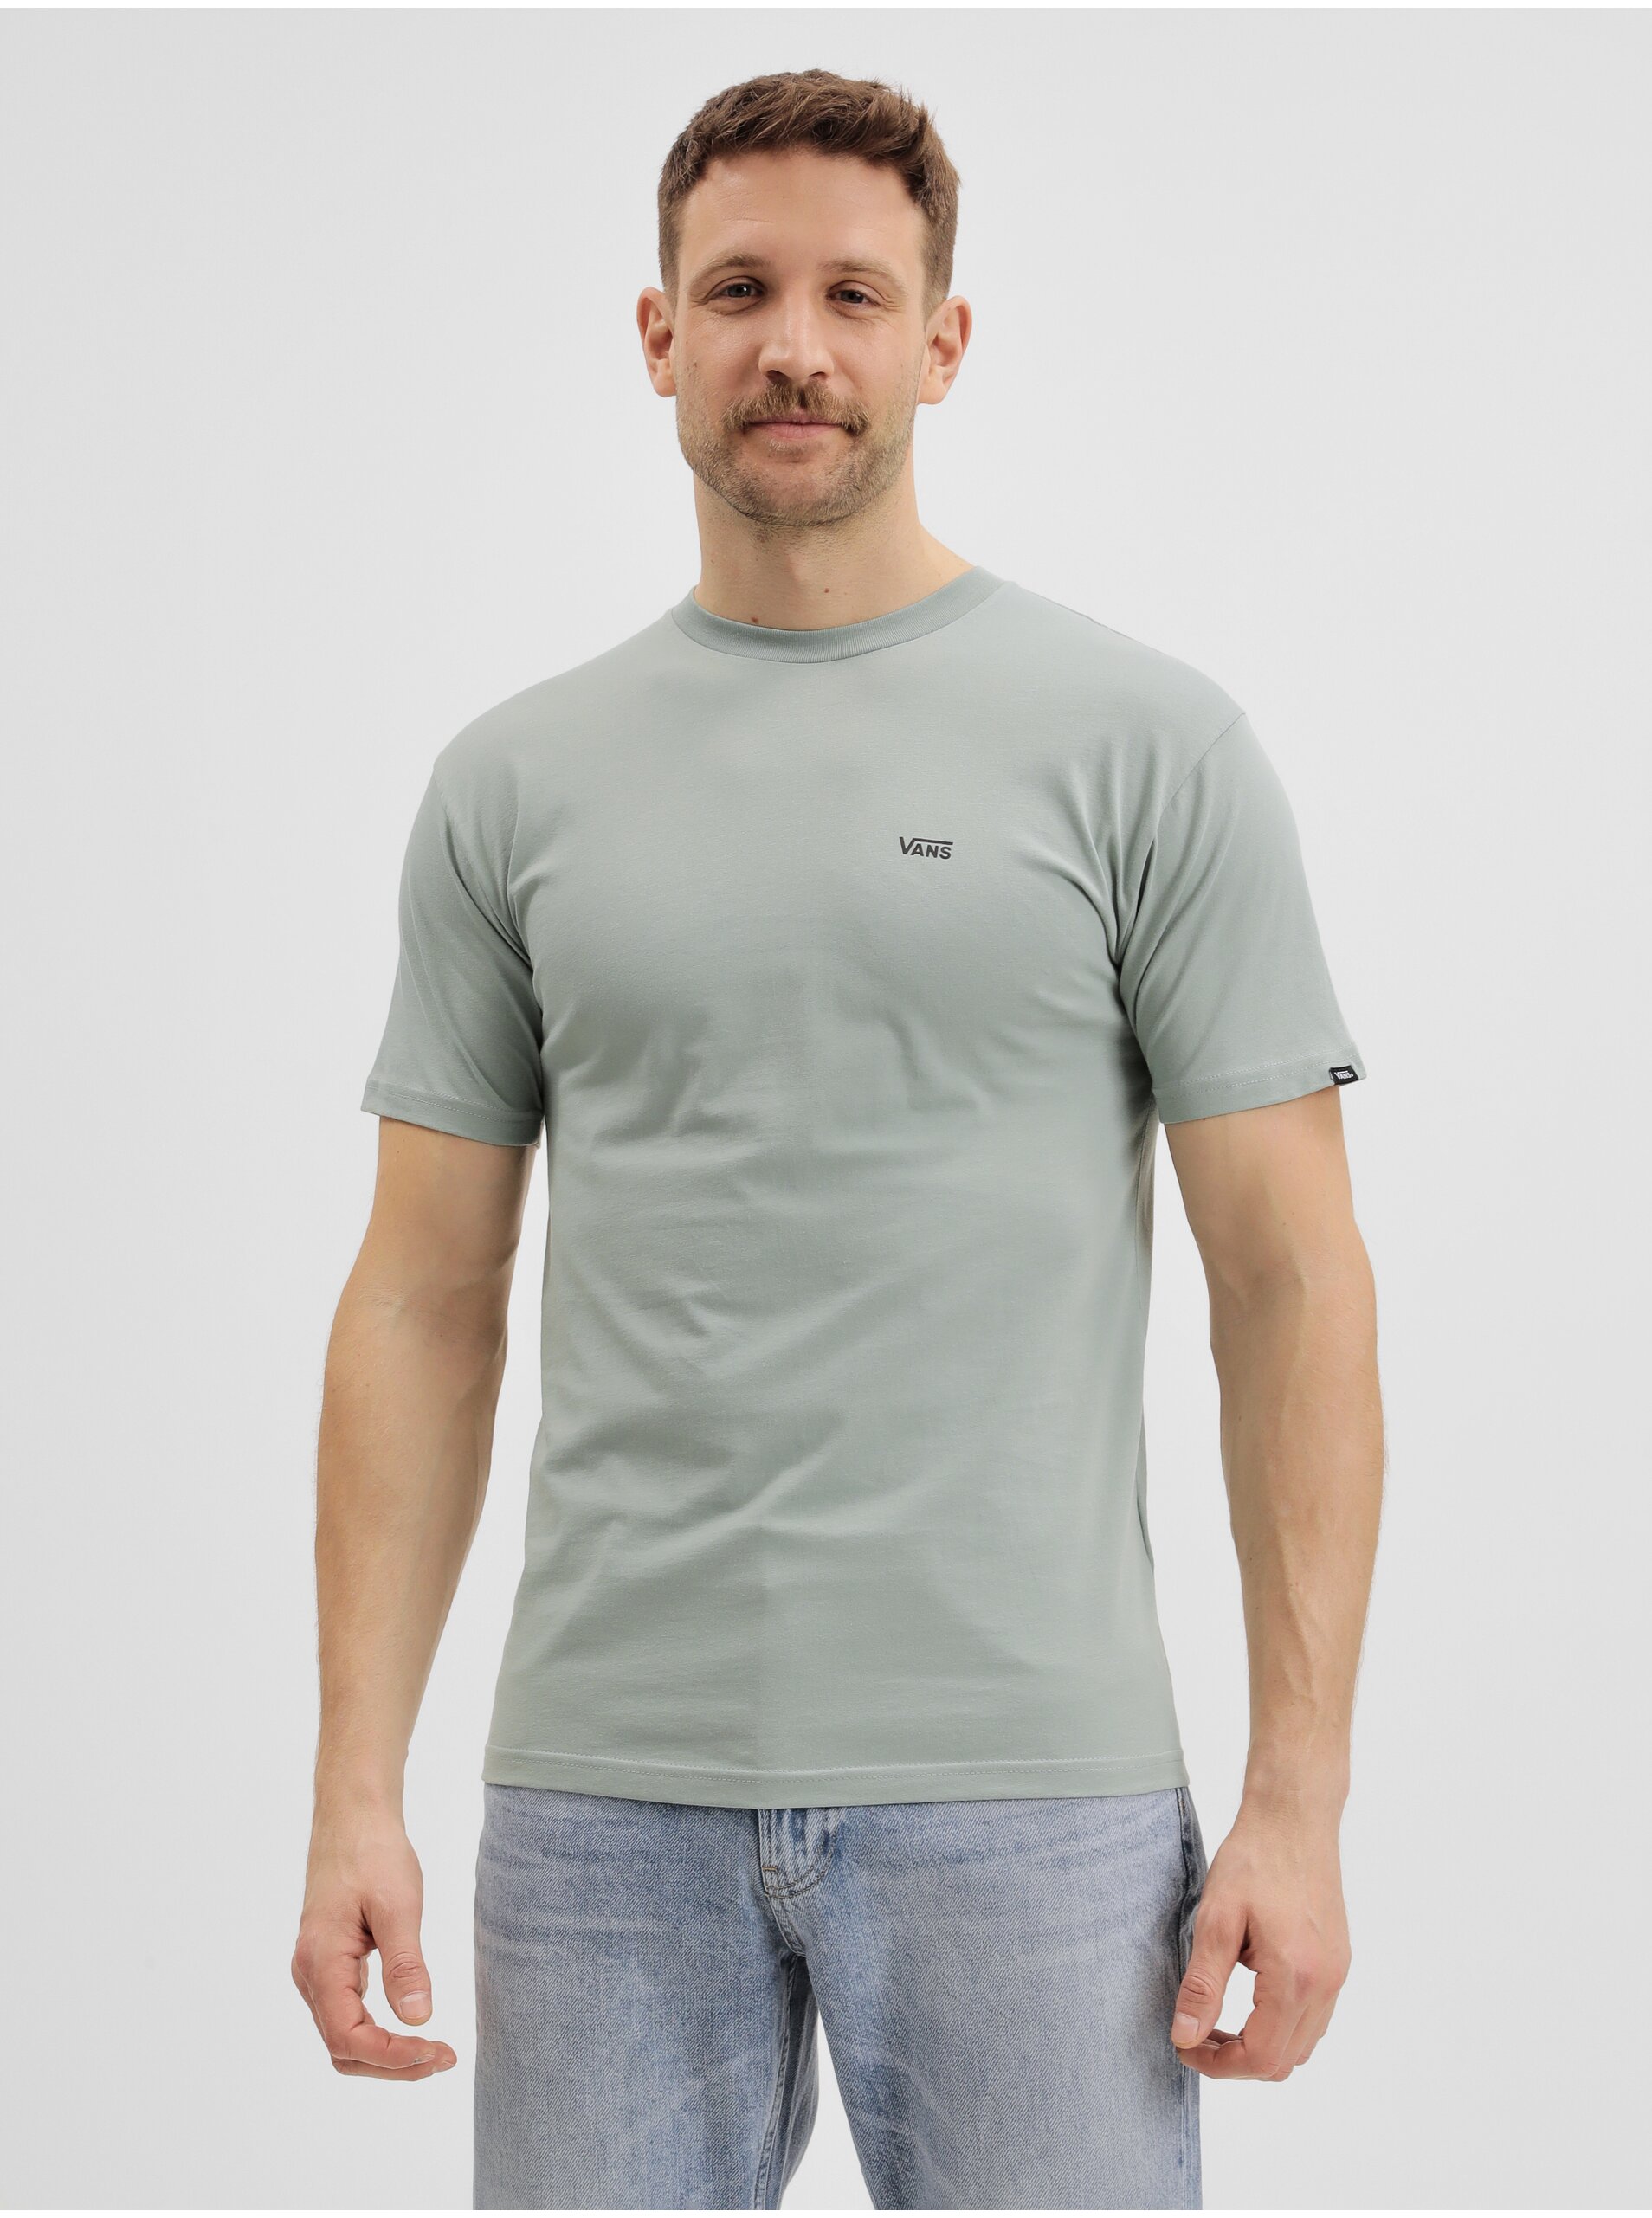 Lacno Svetlozelené pánske tričko VANS Mn Left Chest Logo Tee